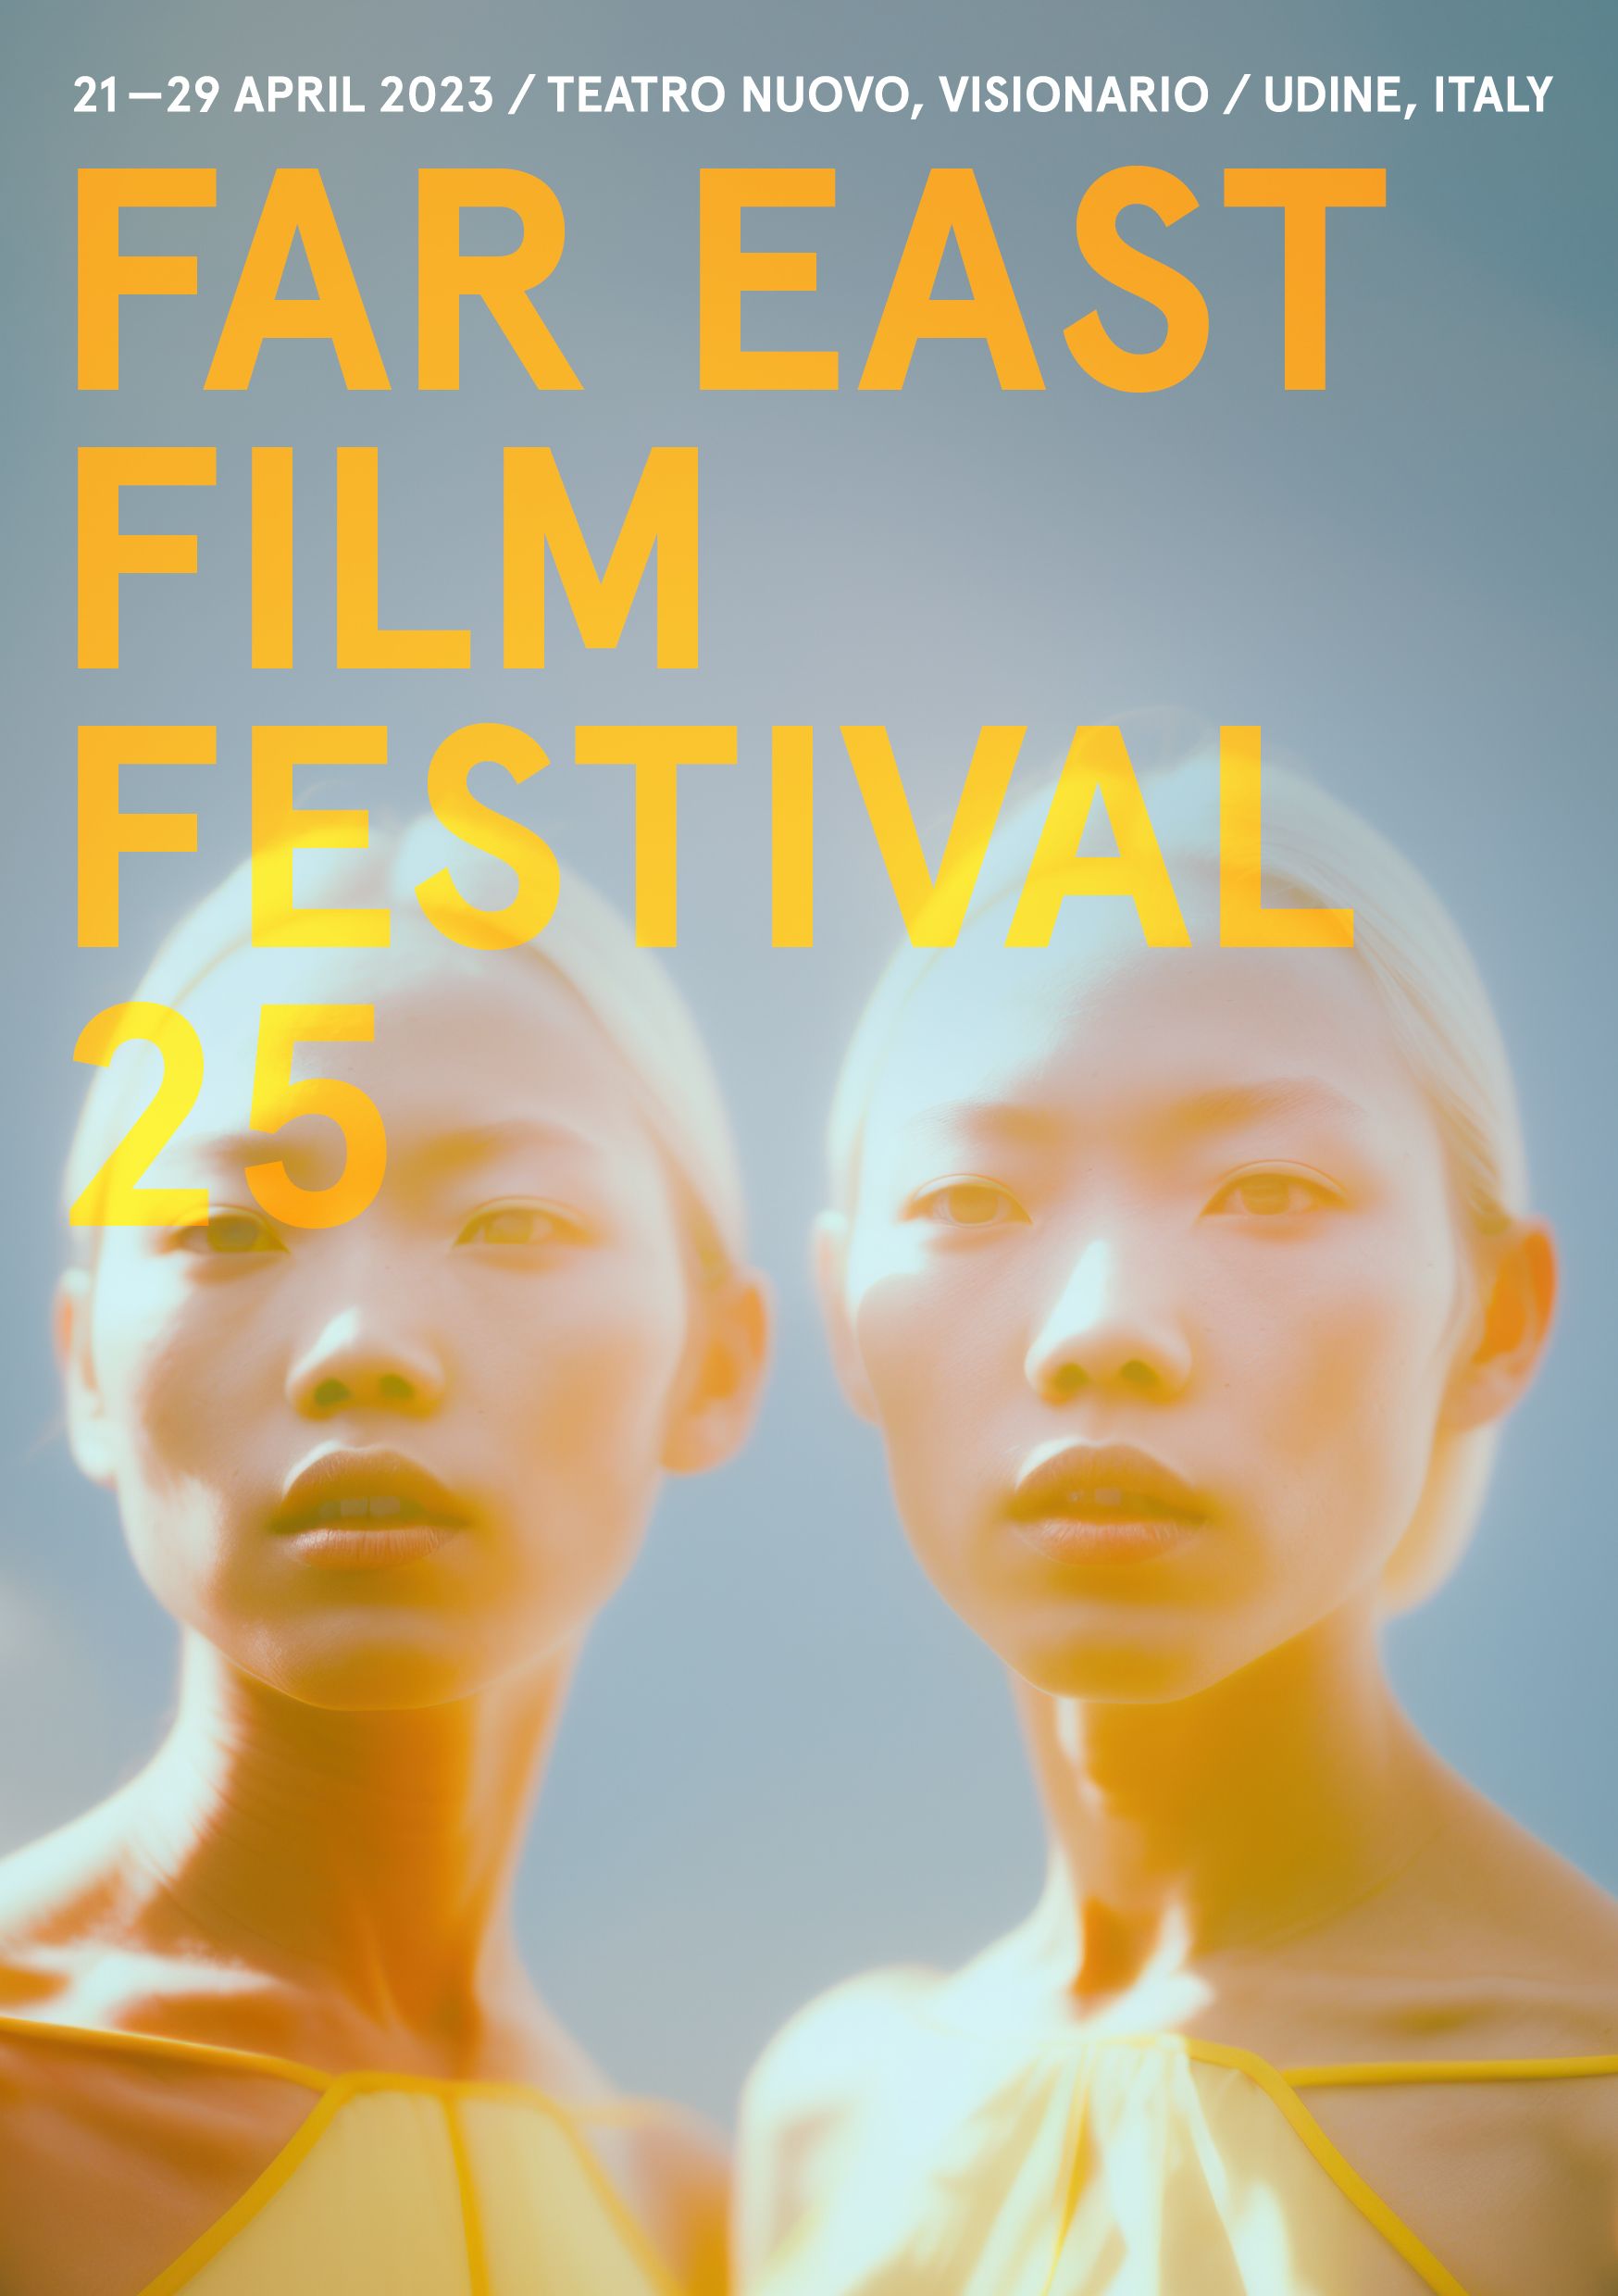 FAR EAST FILM FESTIVAL 25 - La nuova immagine è un’opera d’arte creata dall’Intelligenza Artificiale.